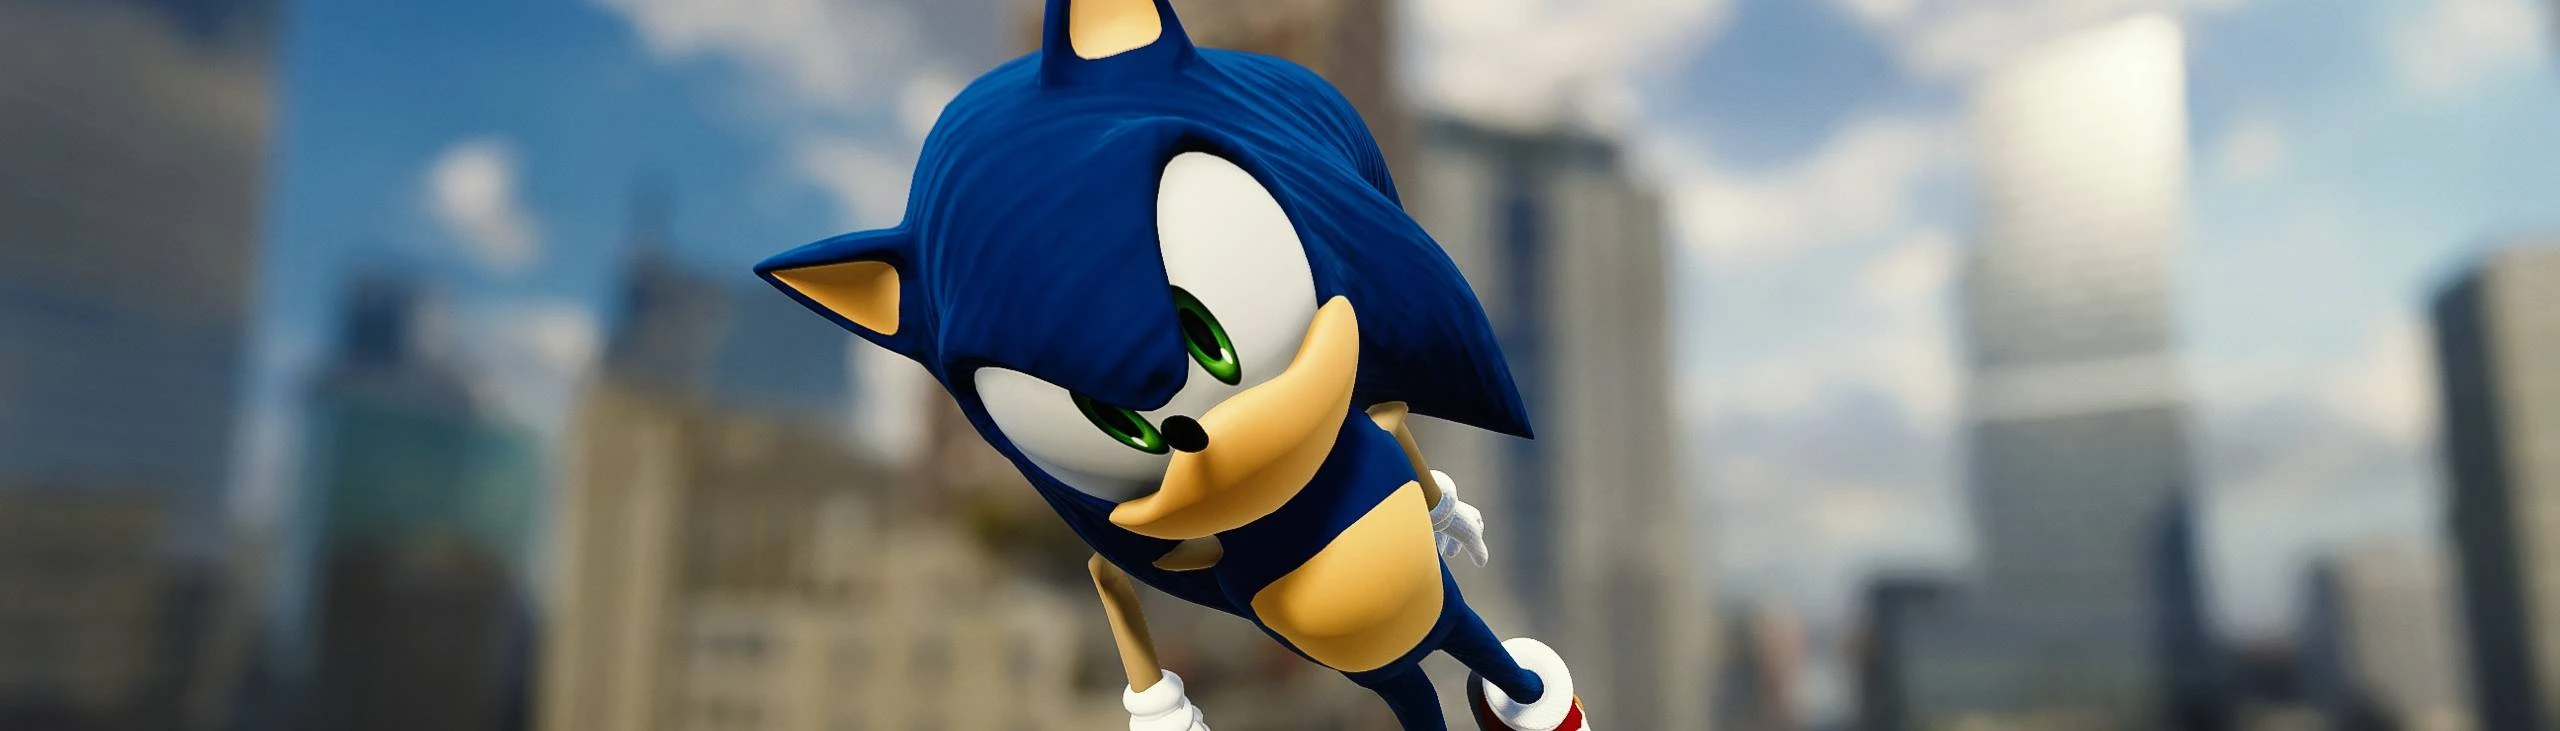 Sonic, Sonic Nexus Wiki